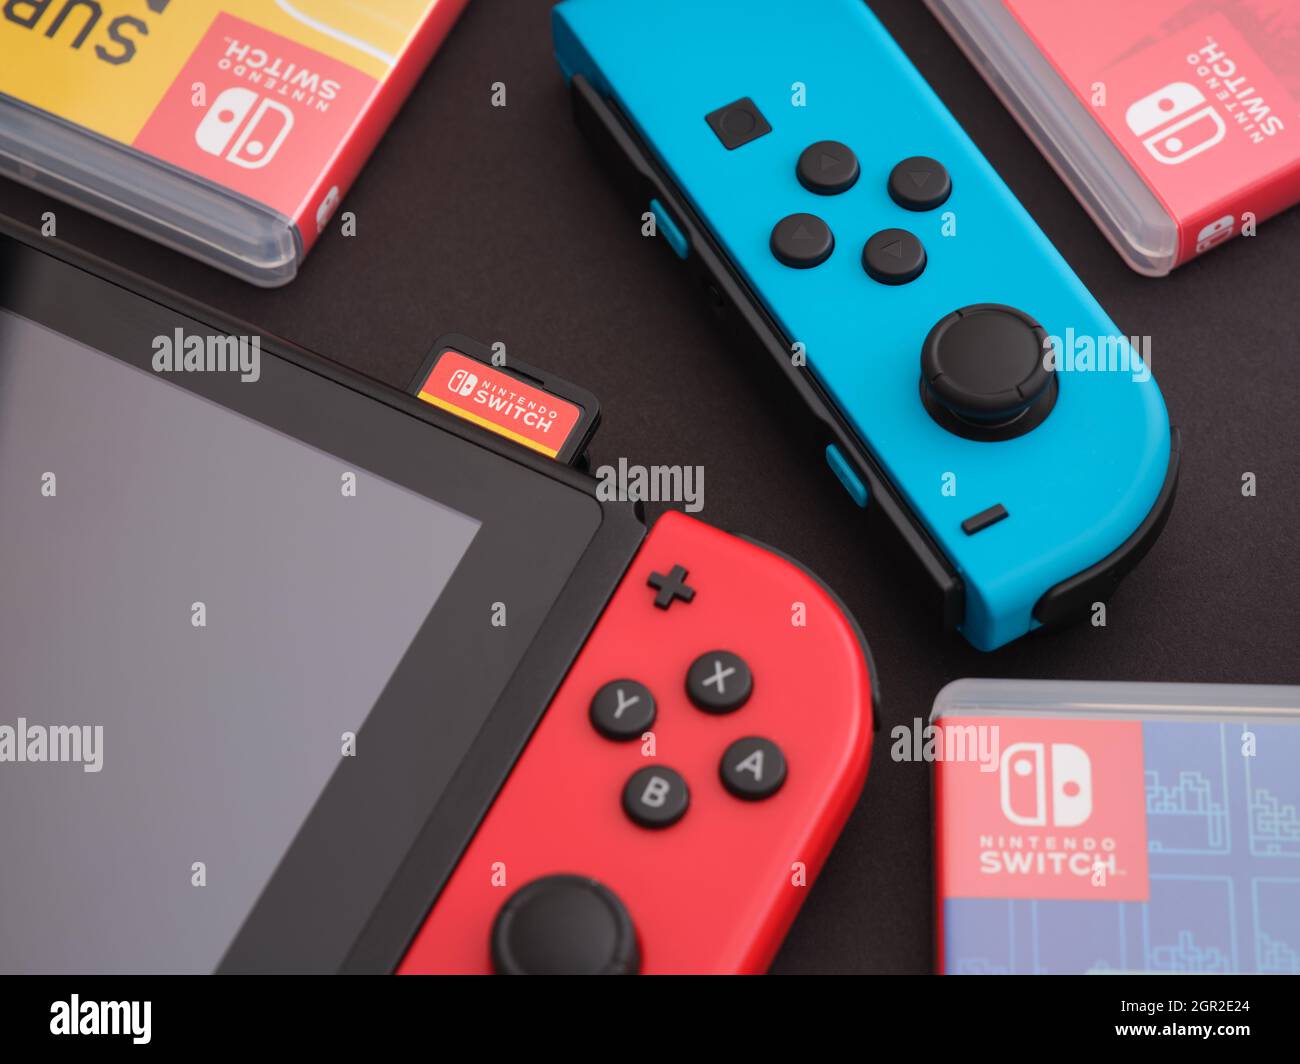 Tambov, Federación Rusa - 28 de septiembre de 2021 Nintendo Switch consola de video juego con un joy-con azul y cajas de video juego que se encuentran cerca. Foto de stock